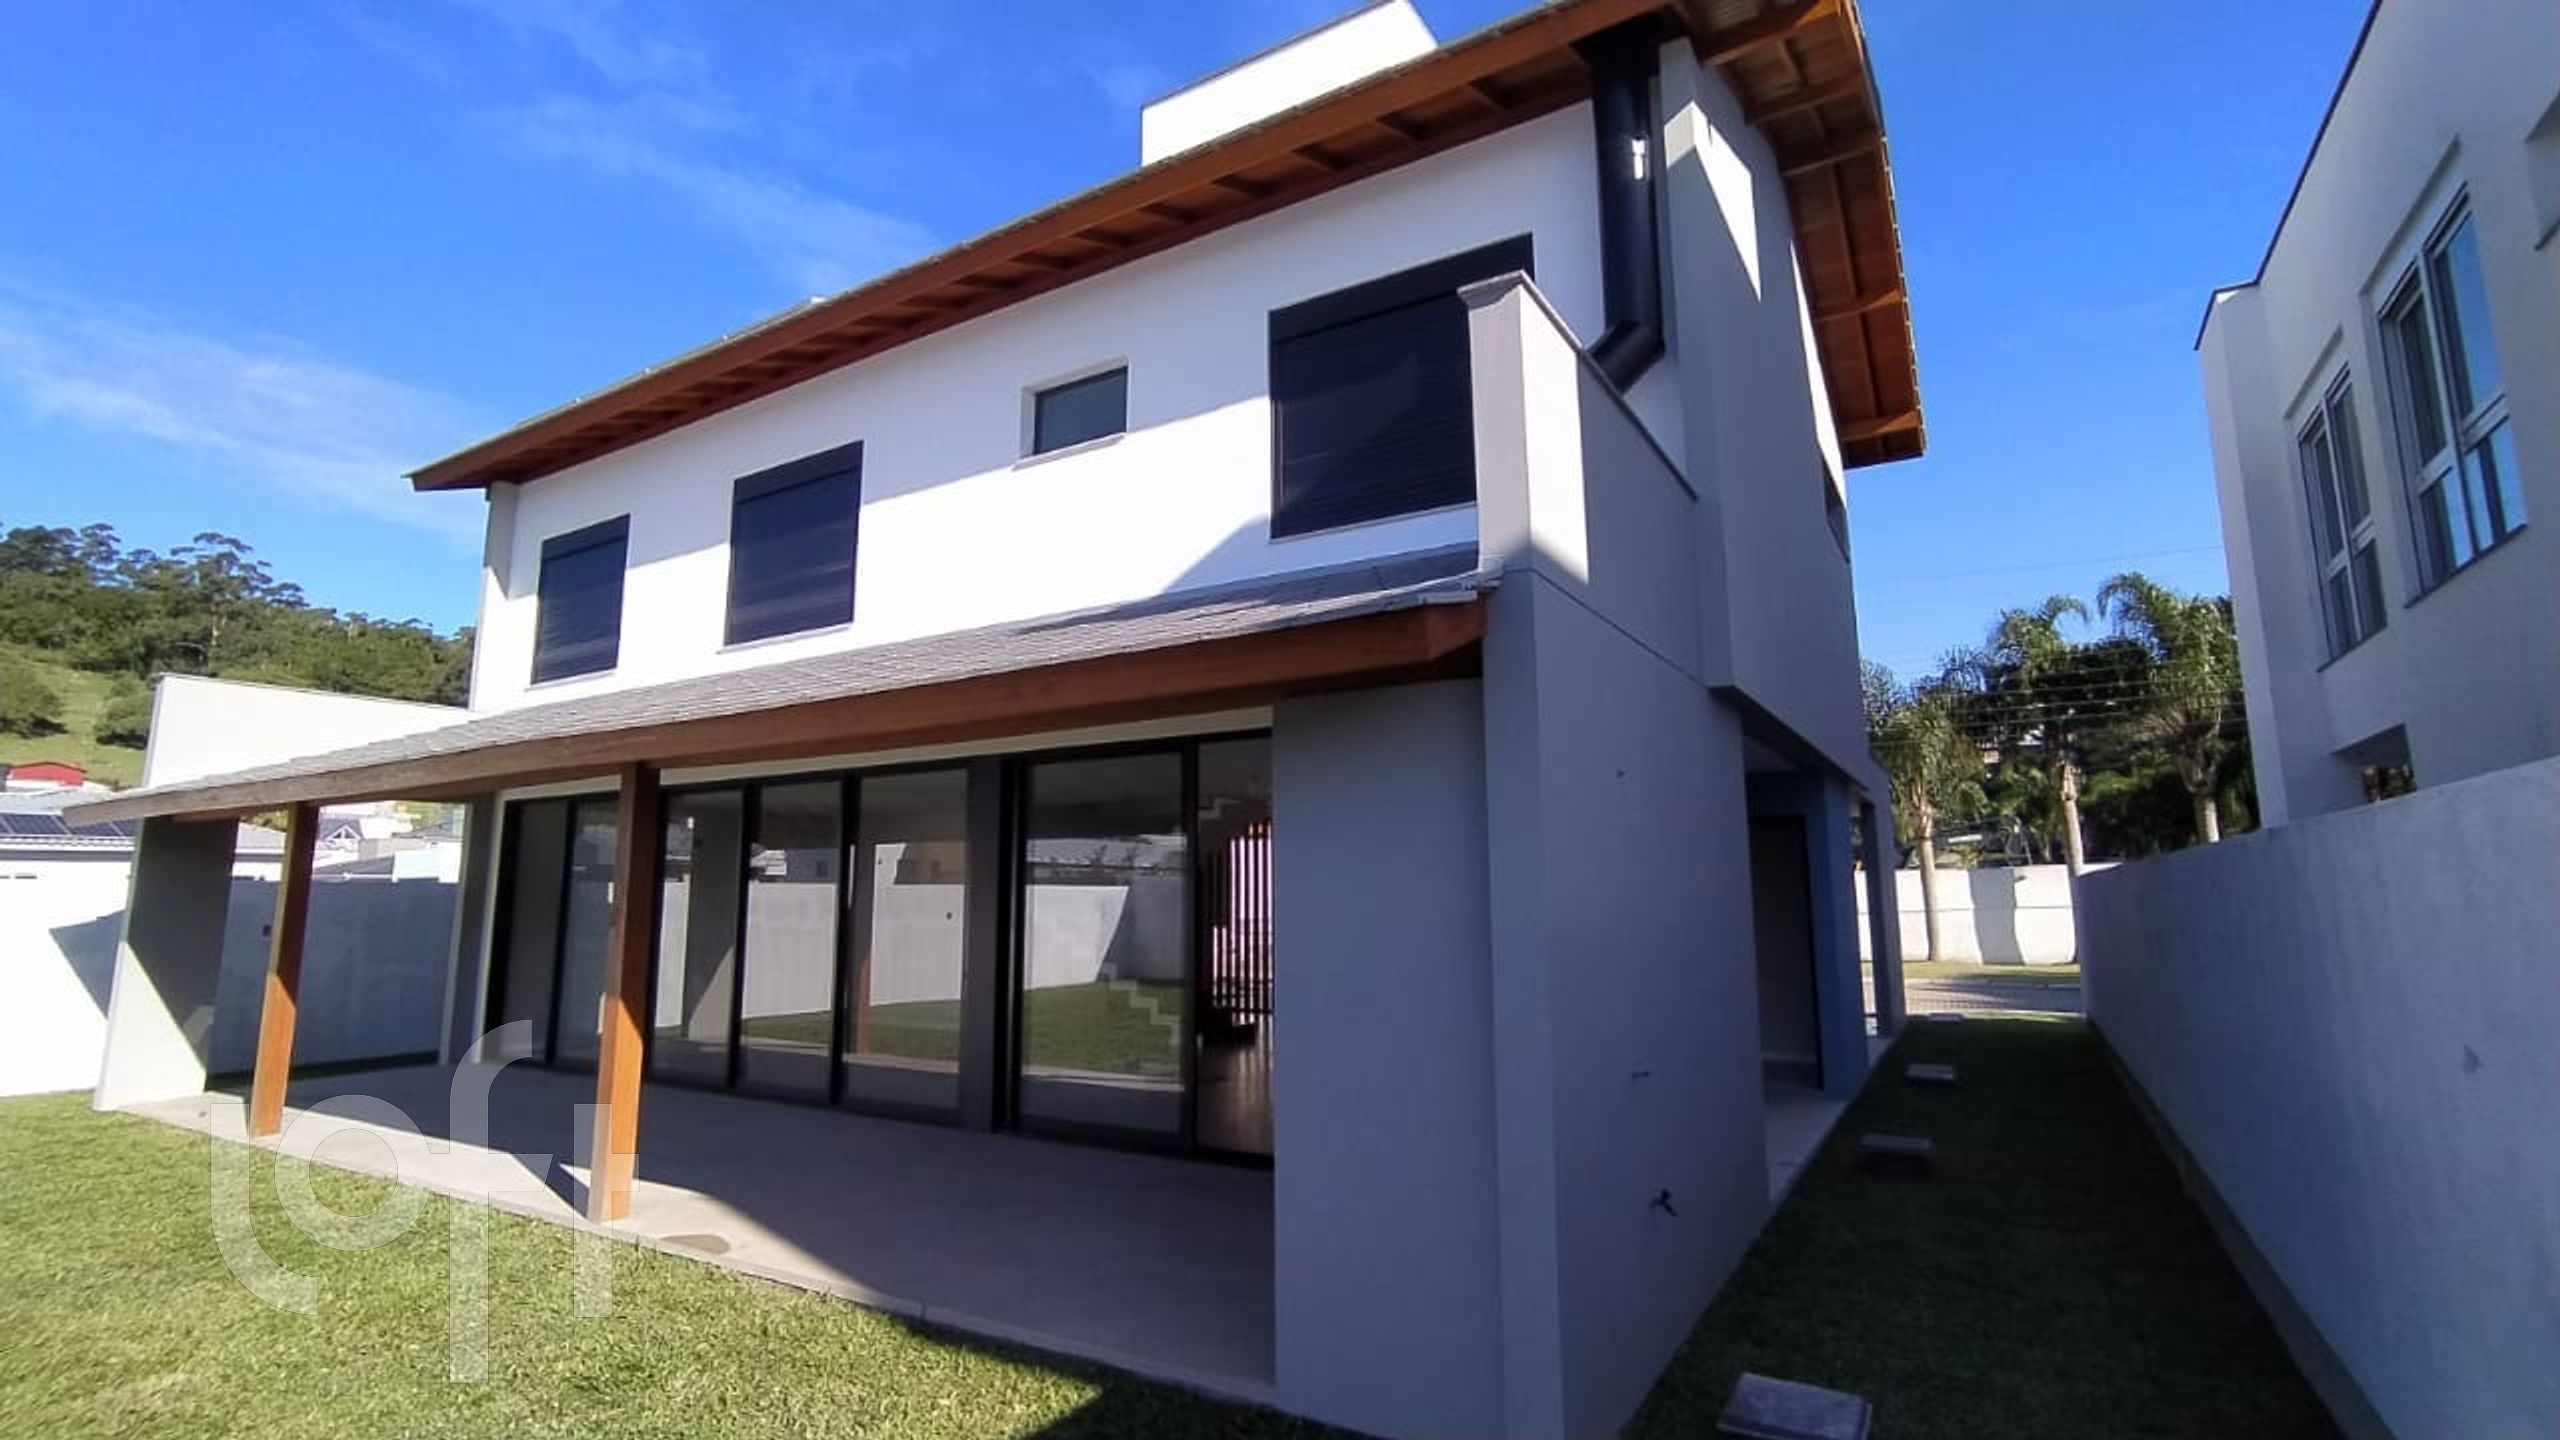 VENDA &#8211; Casa em Condomínio de 4 quartos no bairro Cachoeira do bom Jesus Leste, Florianópolis &#8211; PU1te84fp